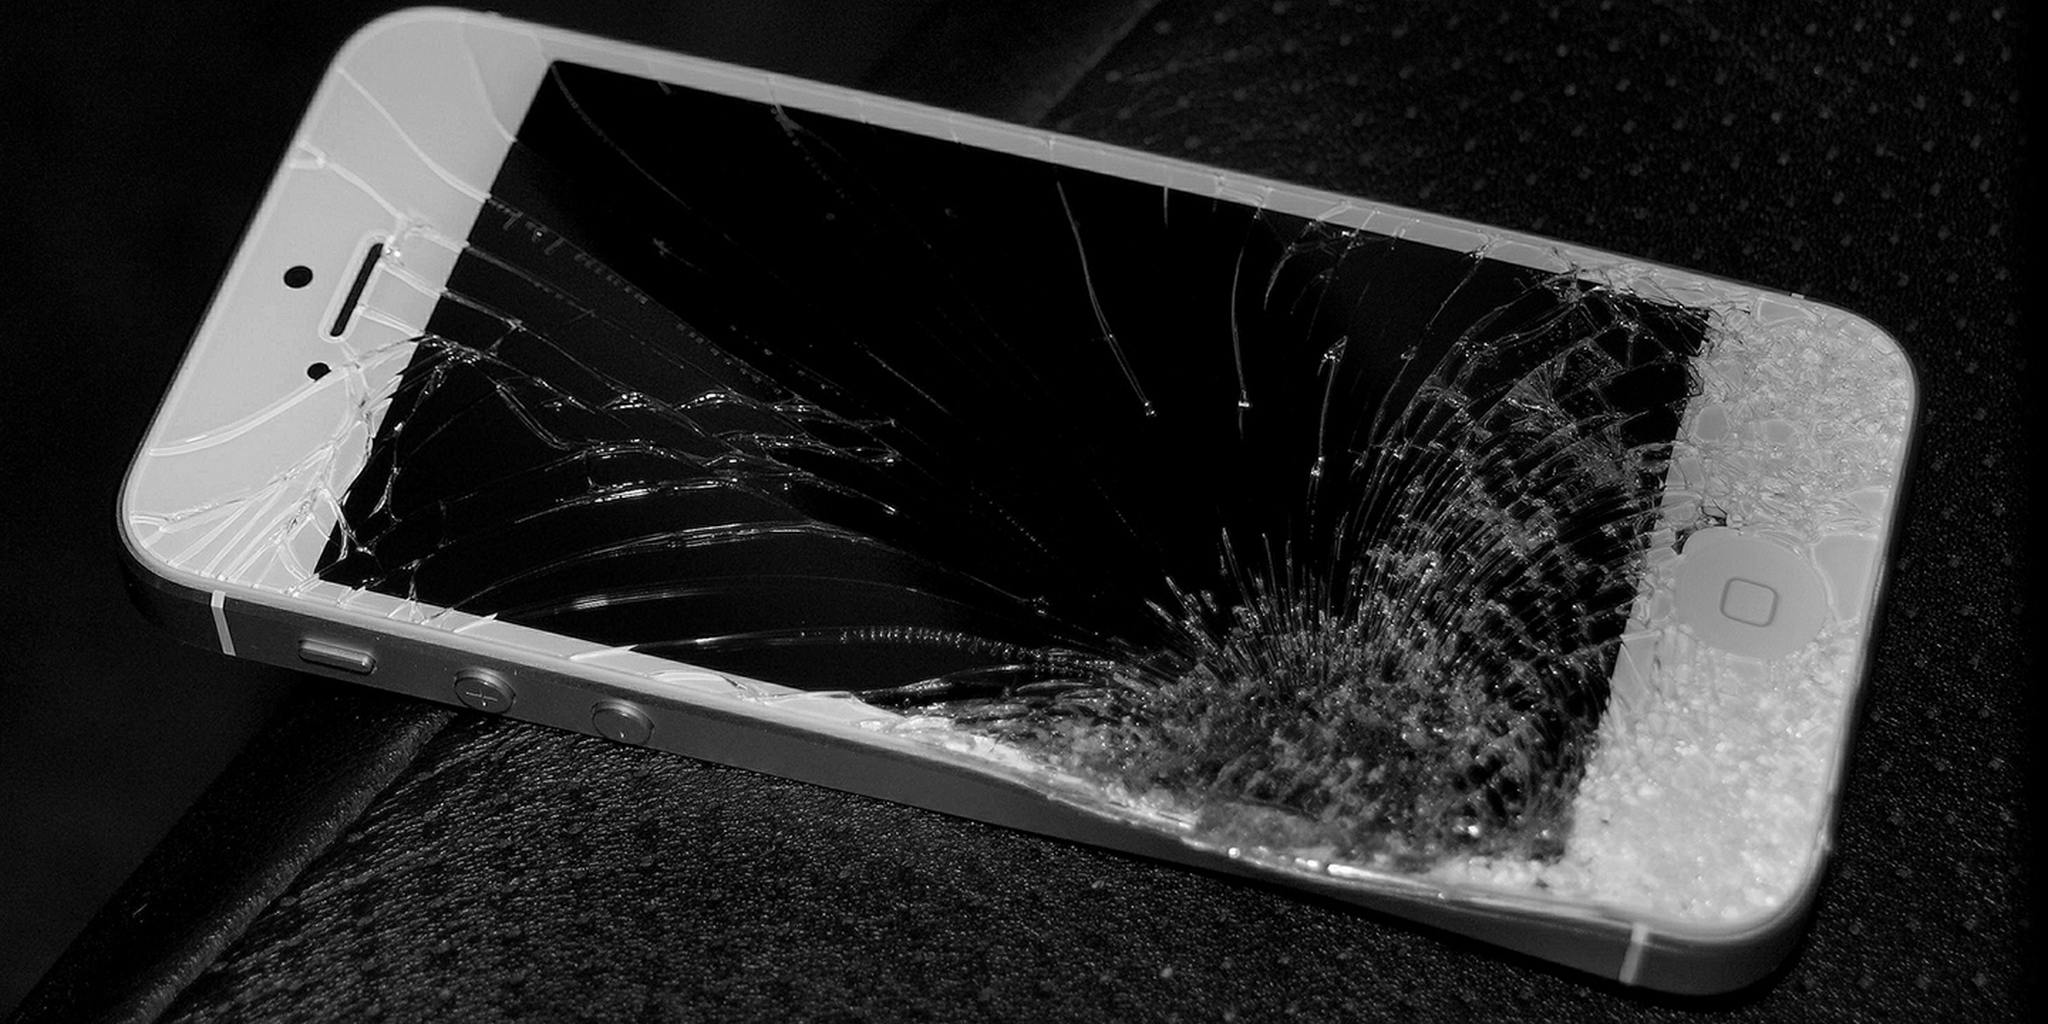 Картинка разбитого телефона на весь экран. Разбитый айфон 5. Iphone 5s разбитый. Сломанный айфон 5s. Разбитый экран смартфона.